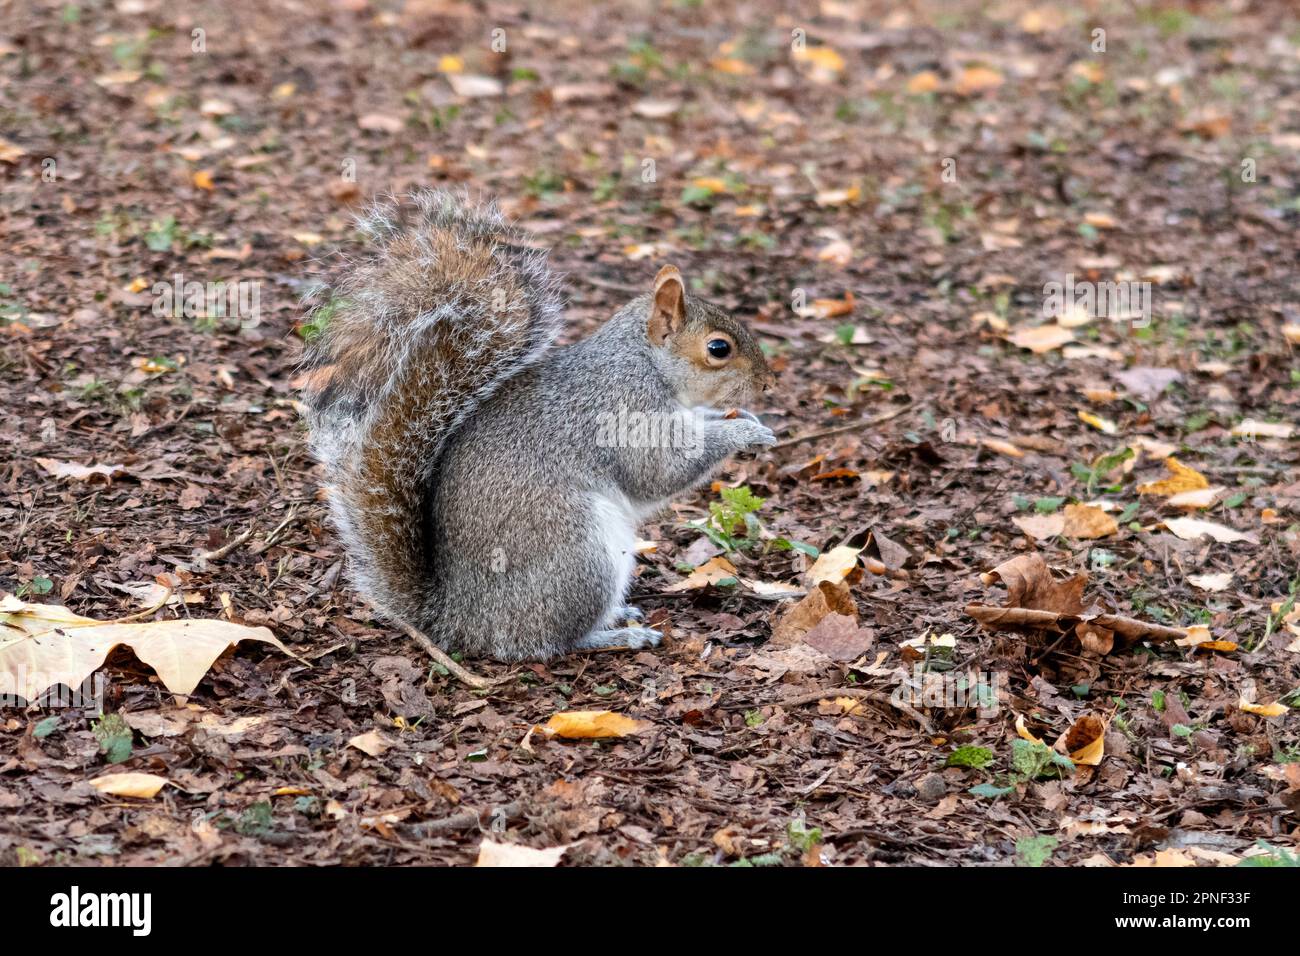 Écureuil gris de l'est, écureuil gris (Sciurus carolinensis), se trouve sur le sol et grignote un écrou, vue latérale, Royaume-Uni, Angleterre, Londres Banque D'Images